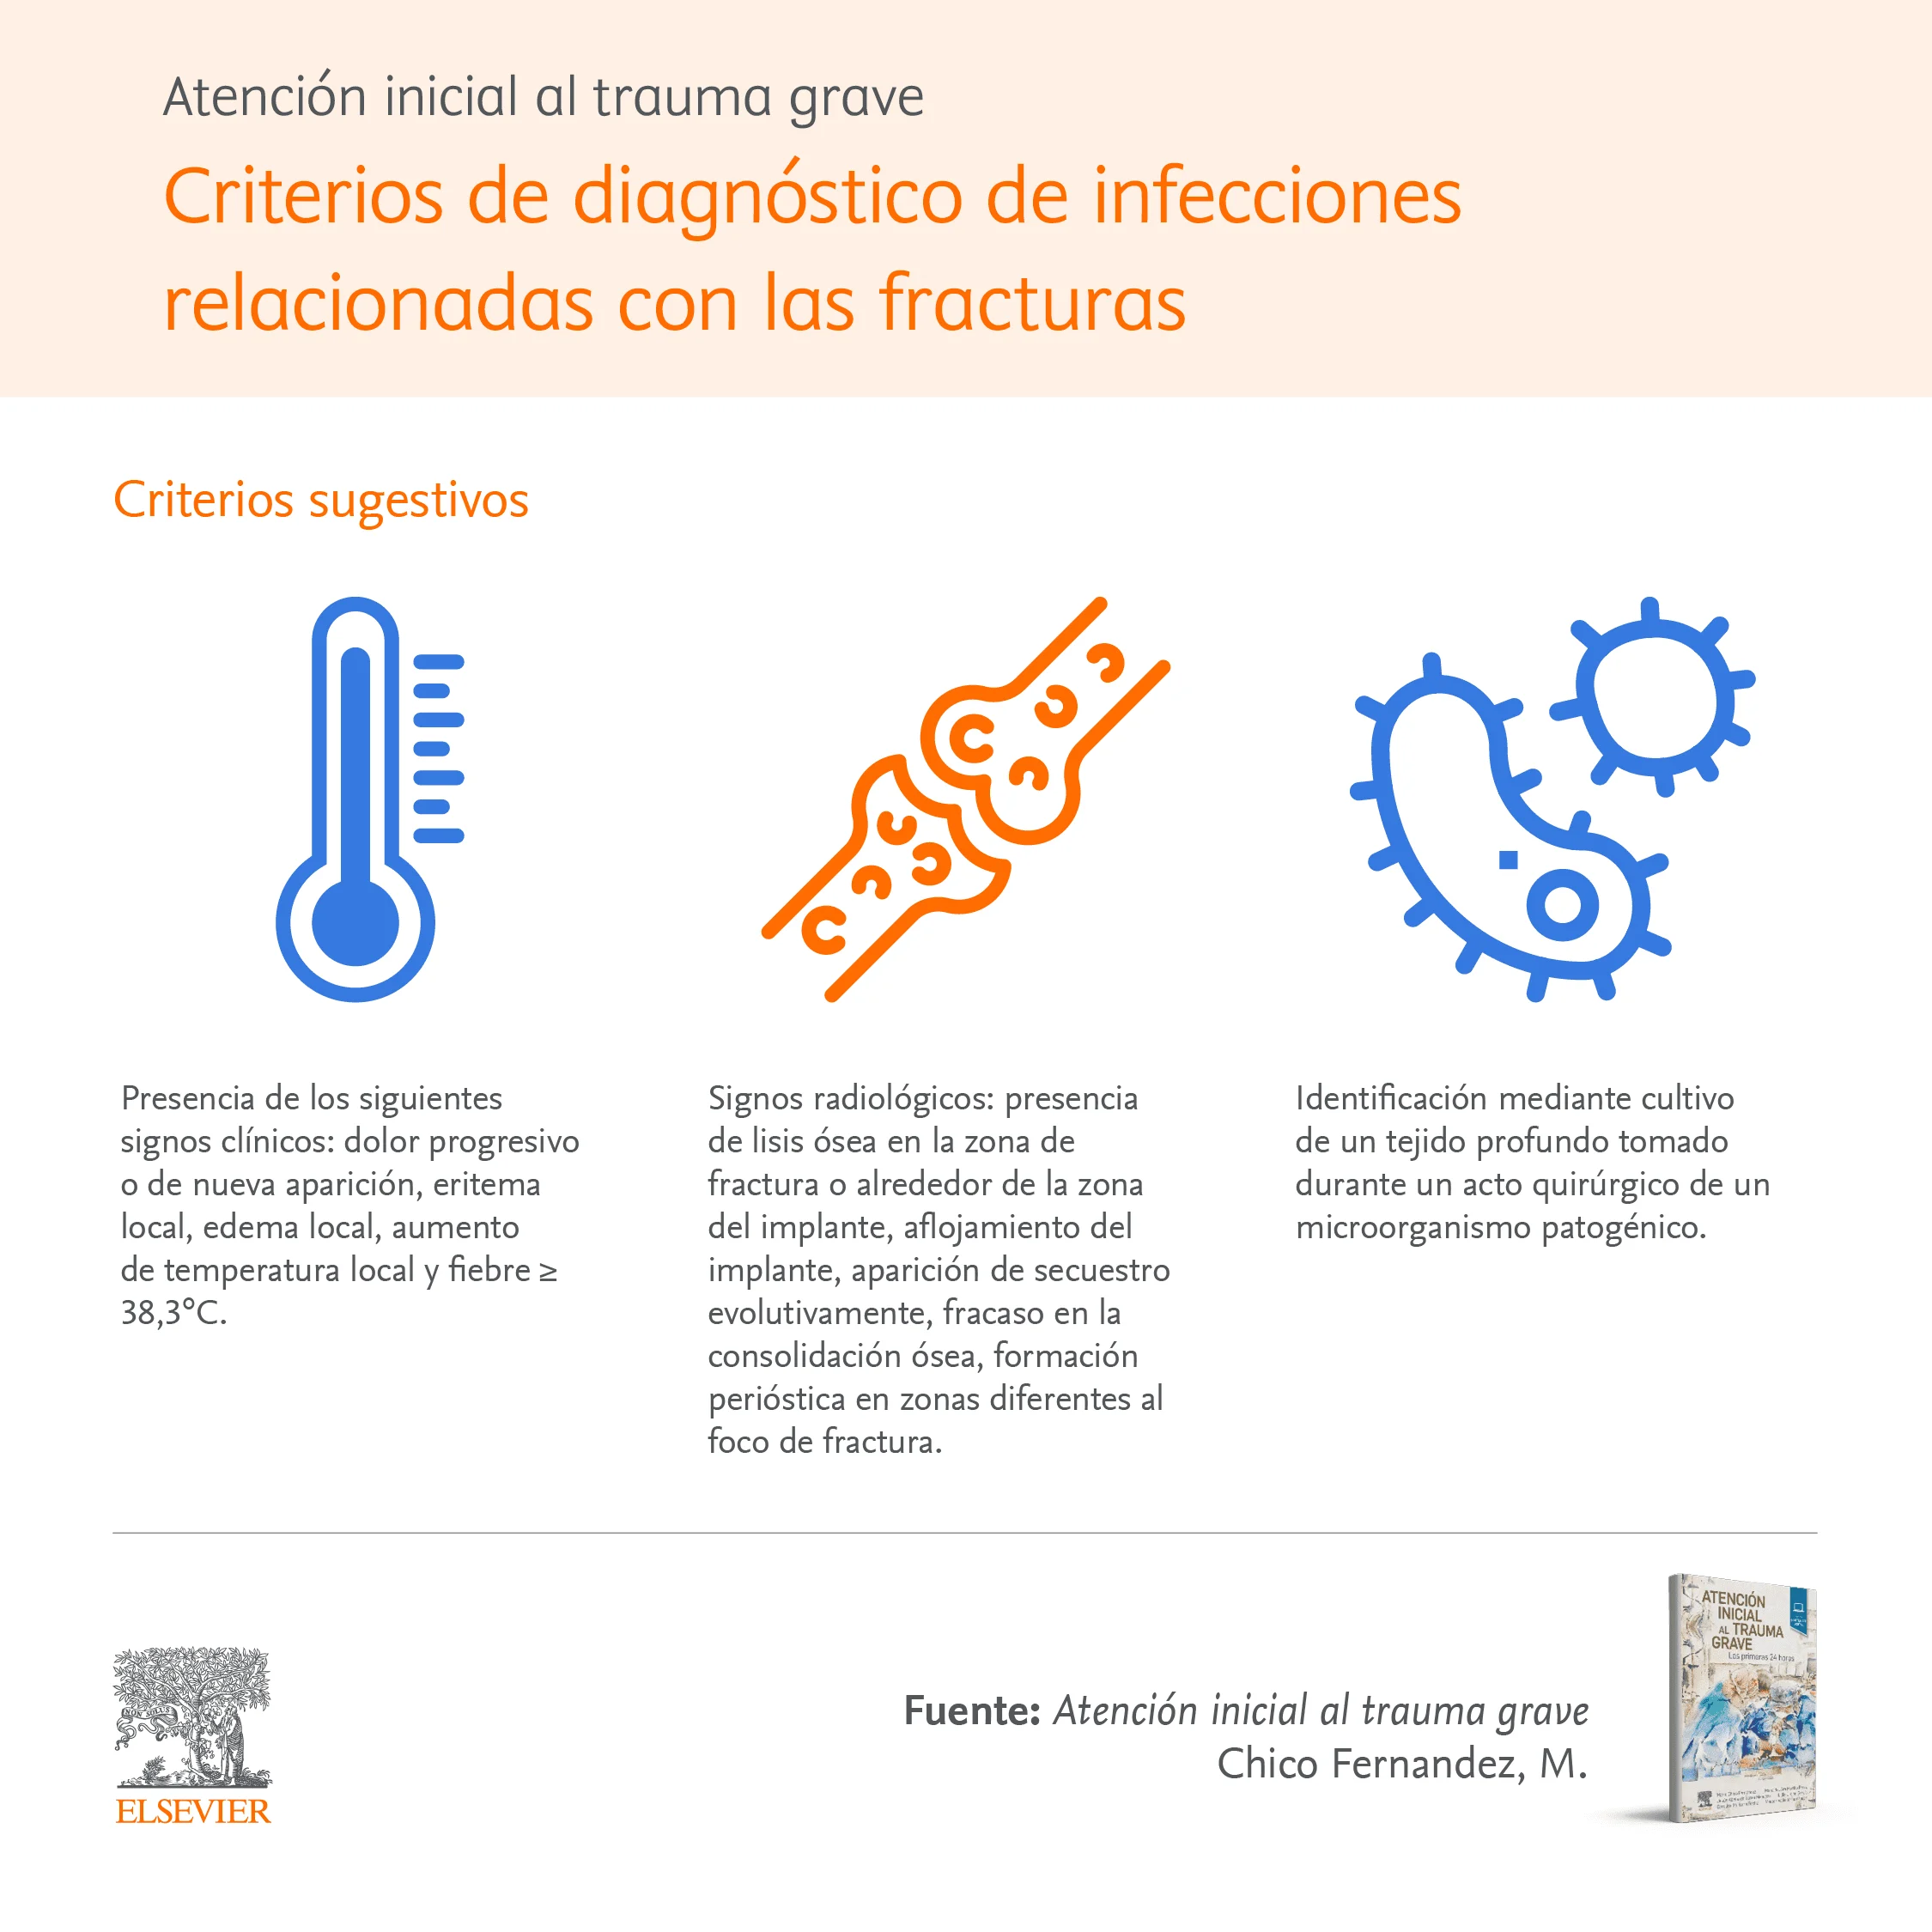 Infographic 2: Criterios de diagnósticos de infecciones relacionadas con las fracturas